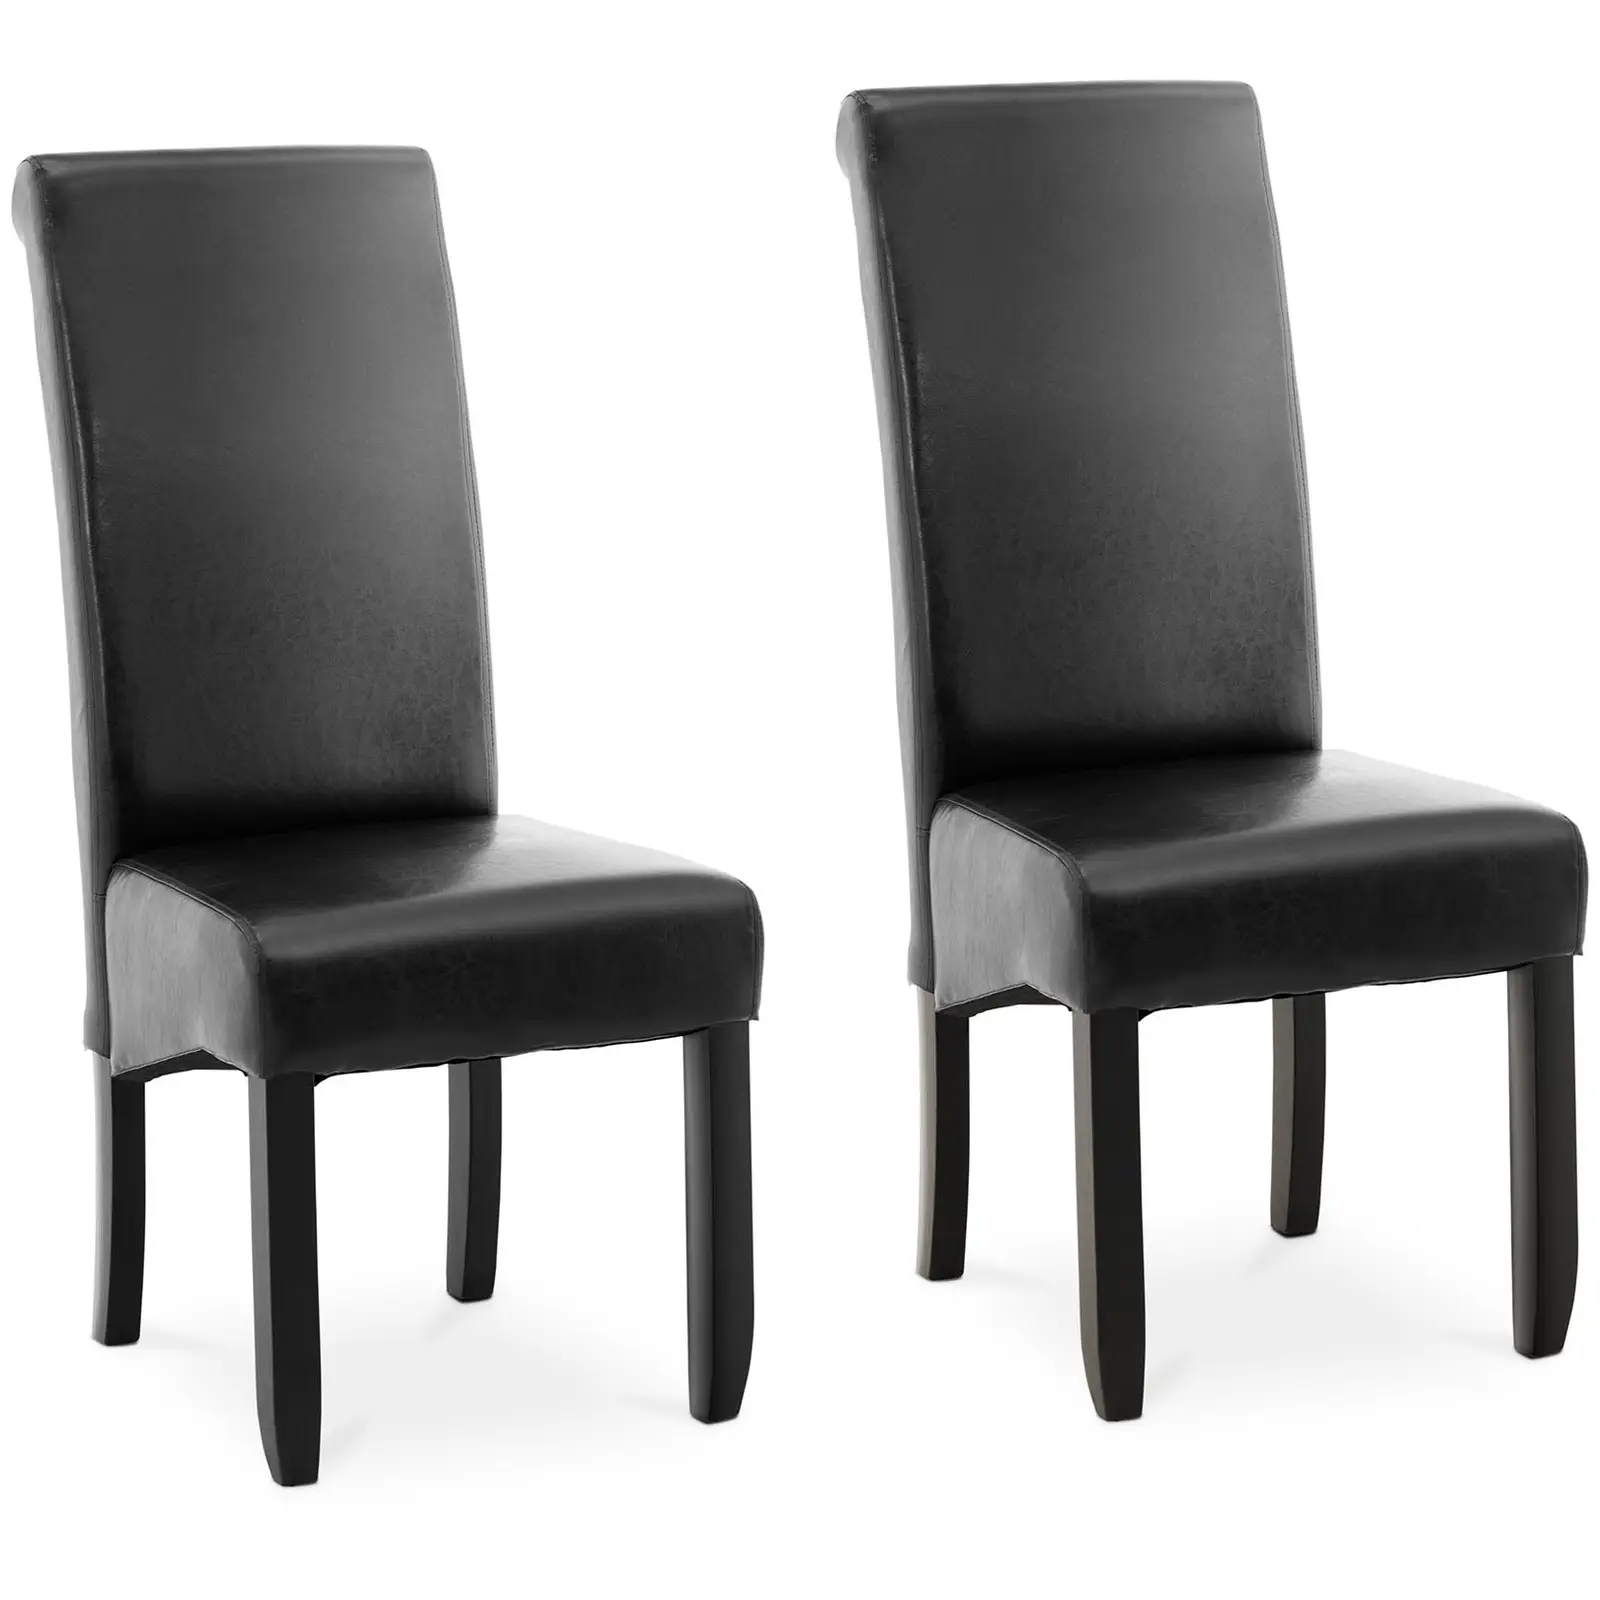 Chaise rembourrée - Lot de 2 - 180 kg max. - Surface d'assise de 44,5 x 44 cm - Coloris noir